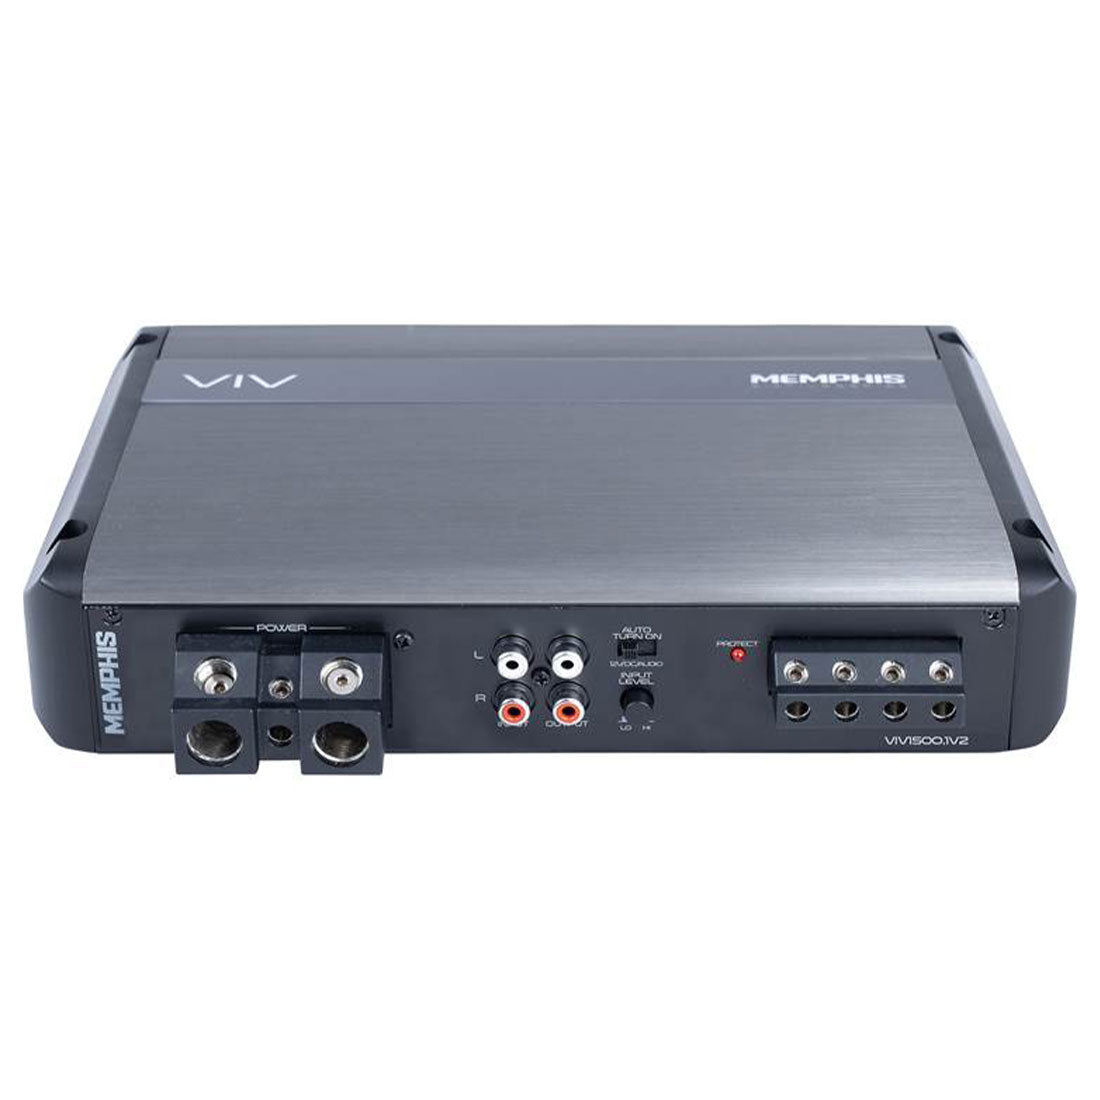 Memphis Audio VIV1500.1V2 SixFive Series 1500W Mono Subwoofer Amplifier